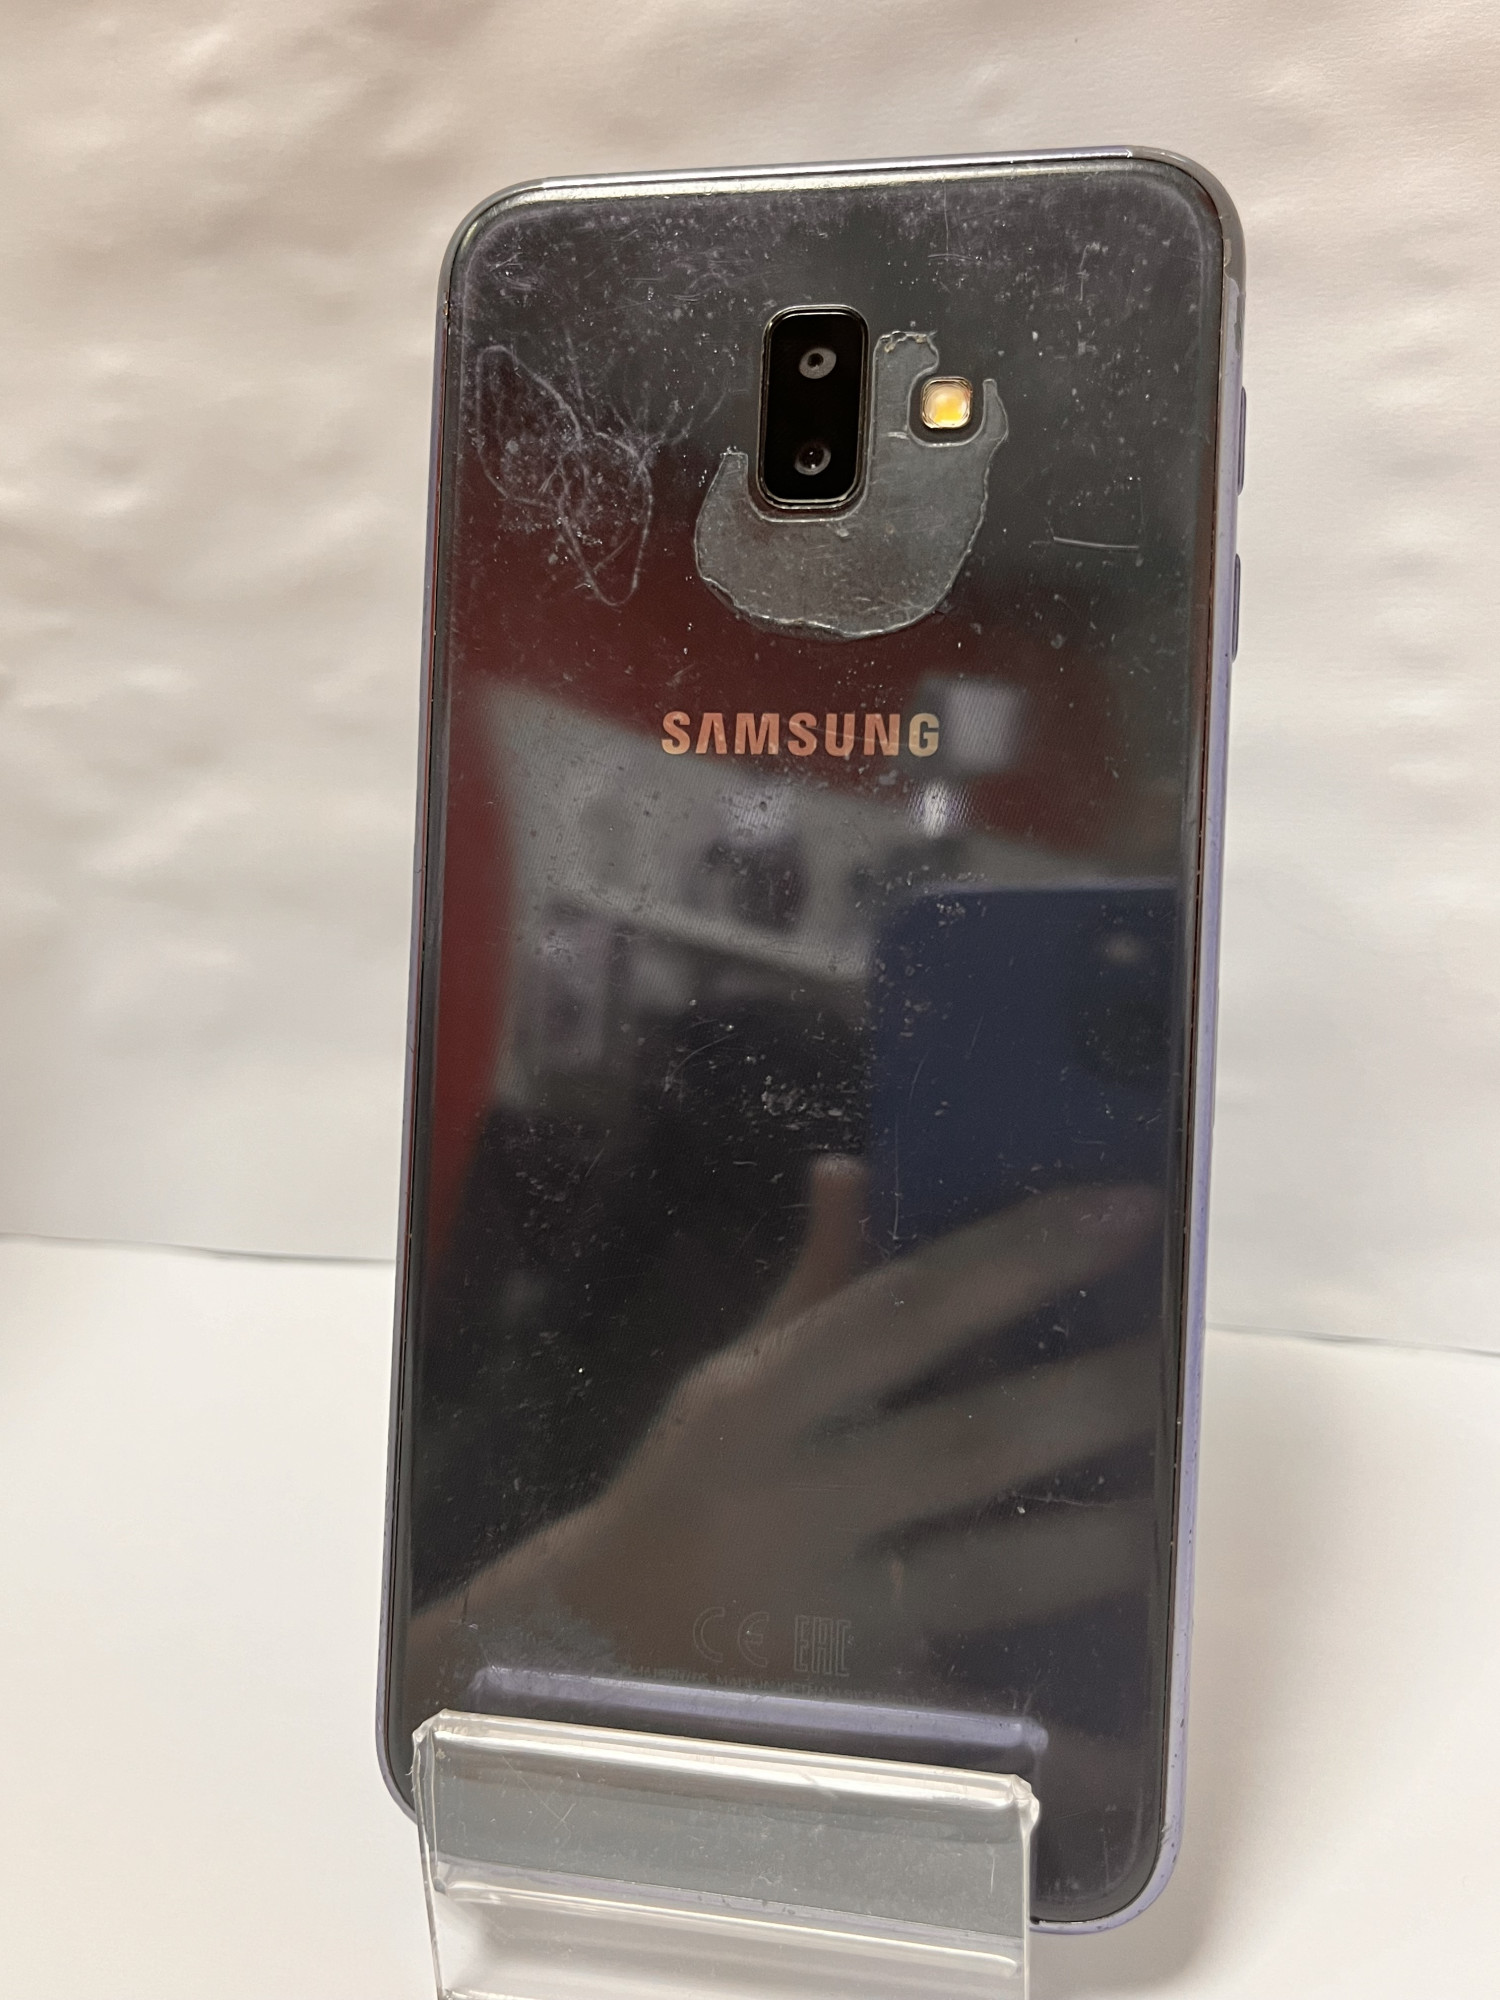 Samsung Galaxy J6+ (SM-J610F) 3/32Gb 1